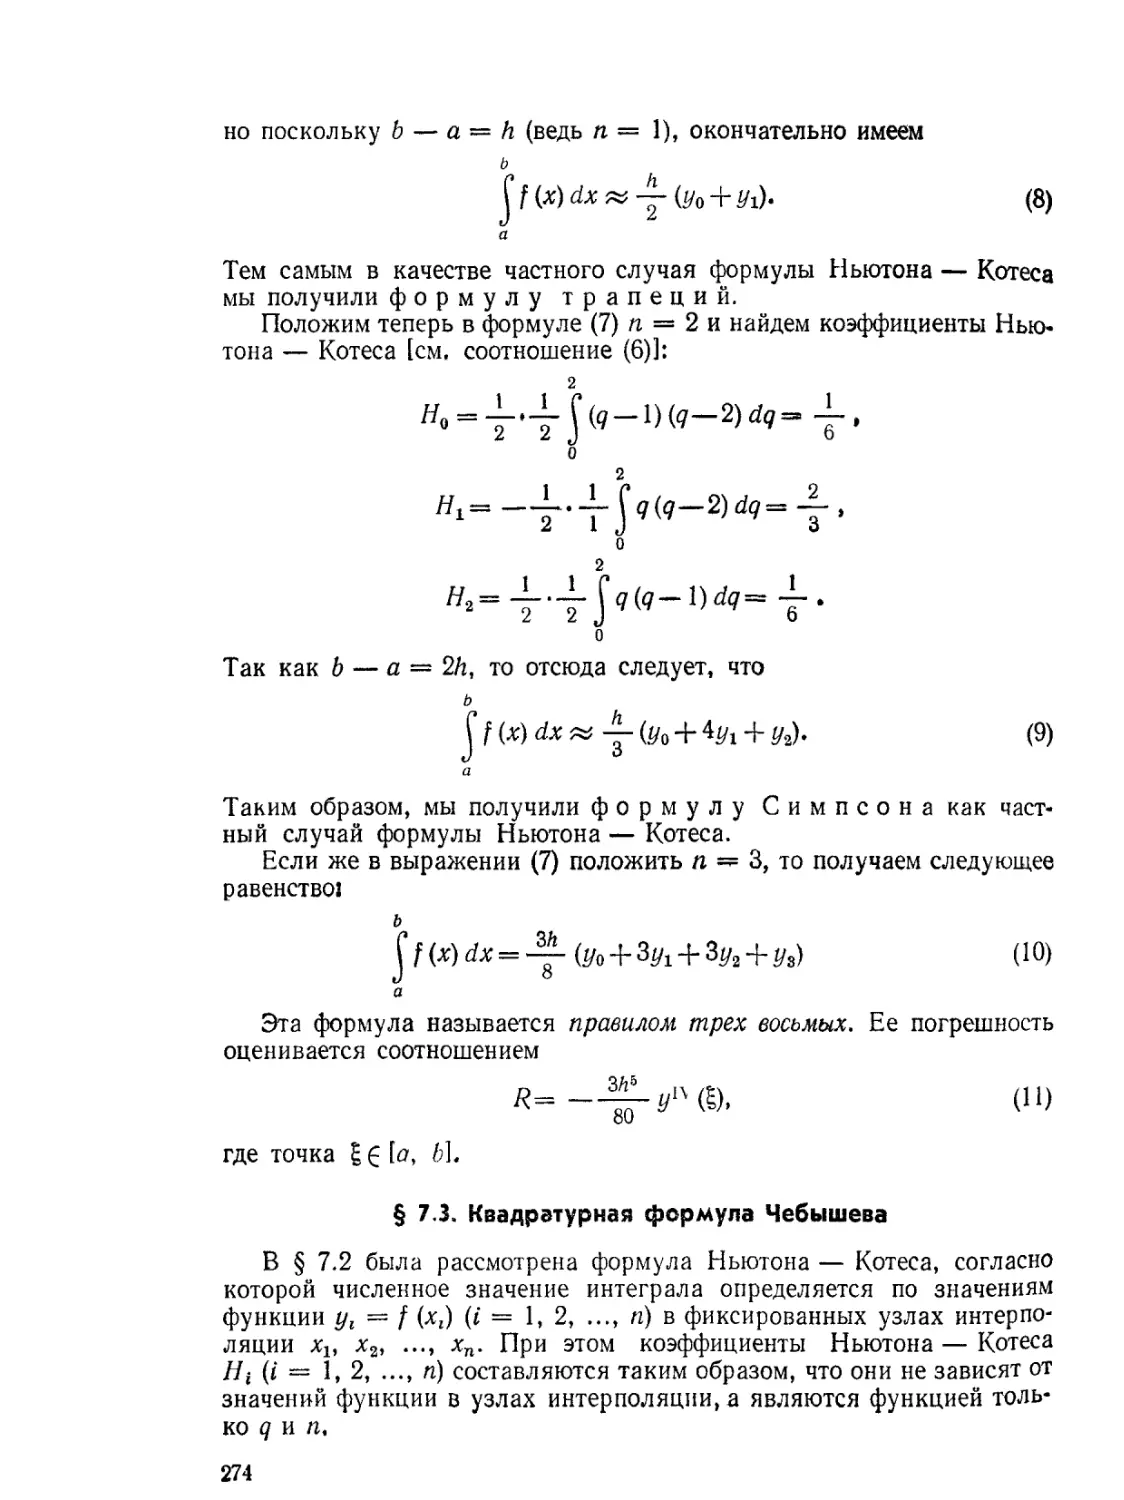 § 7.3. Квадратурная формула Чебышева